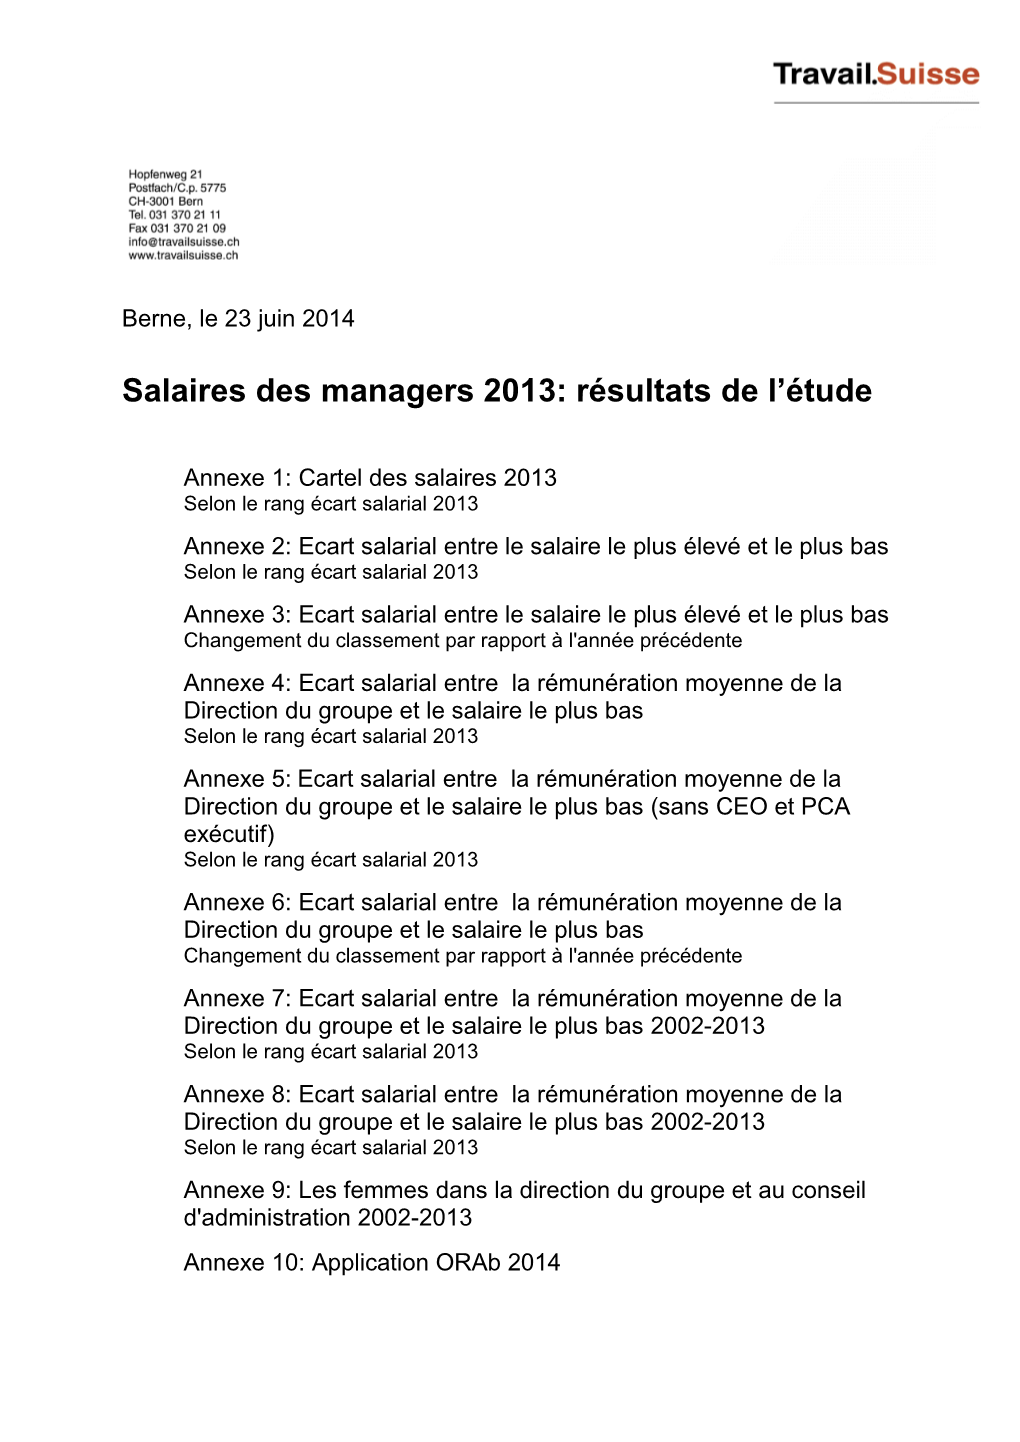 Salaires Des Managers 2013: Résultats De L'étude